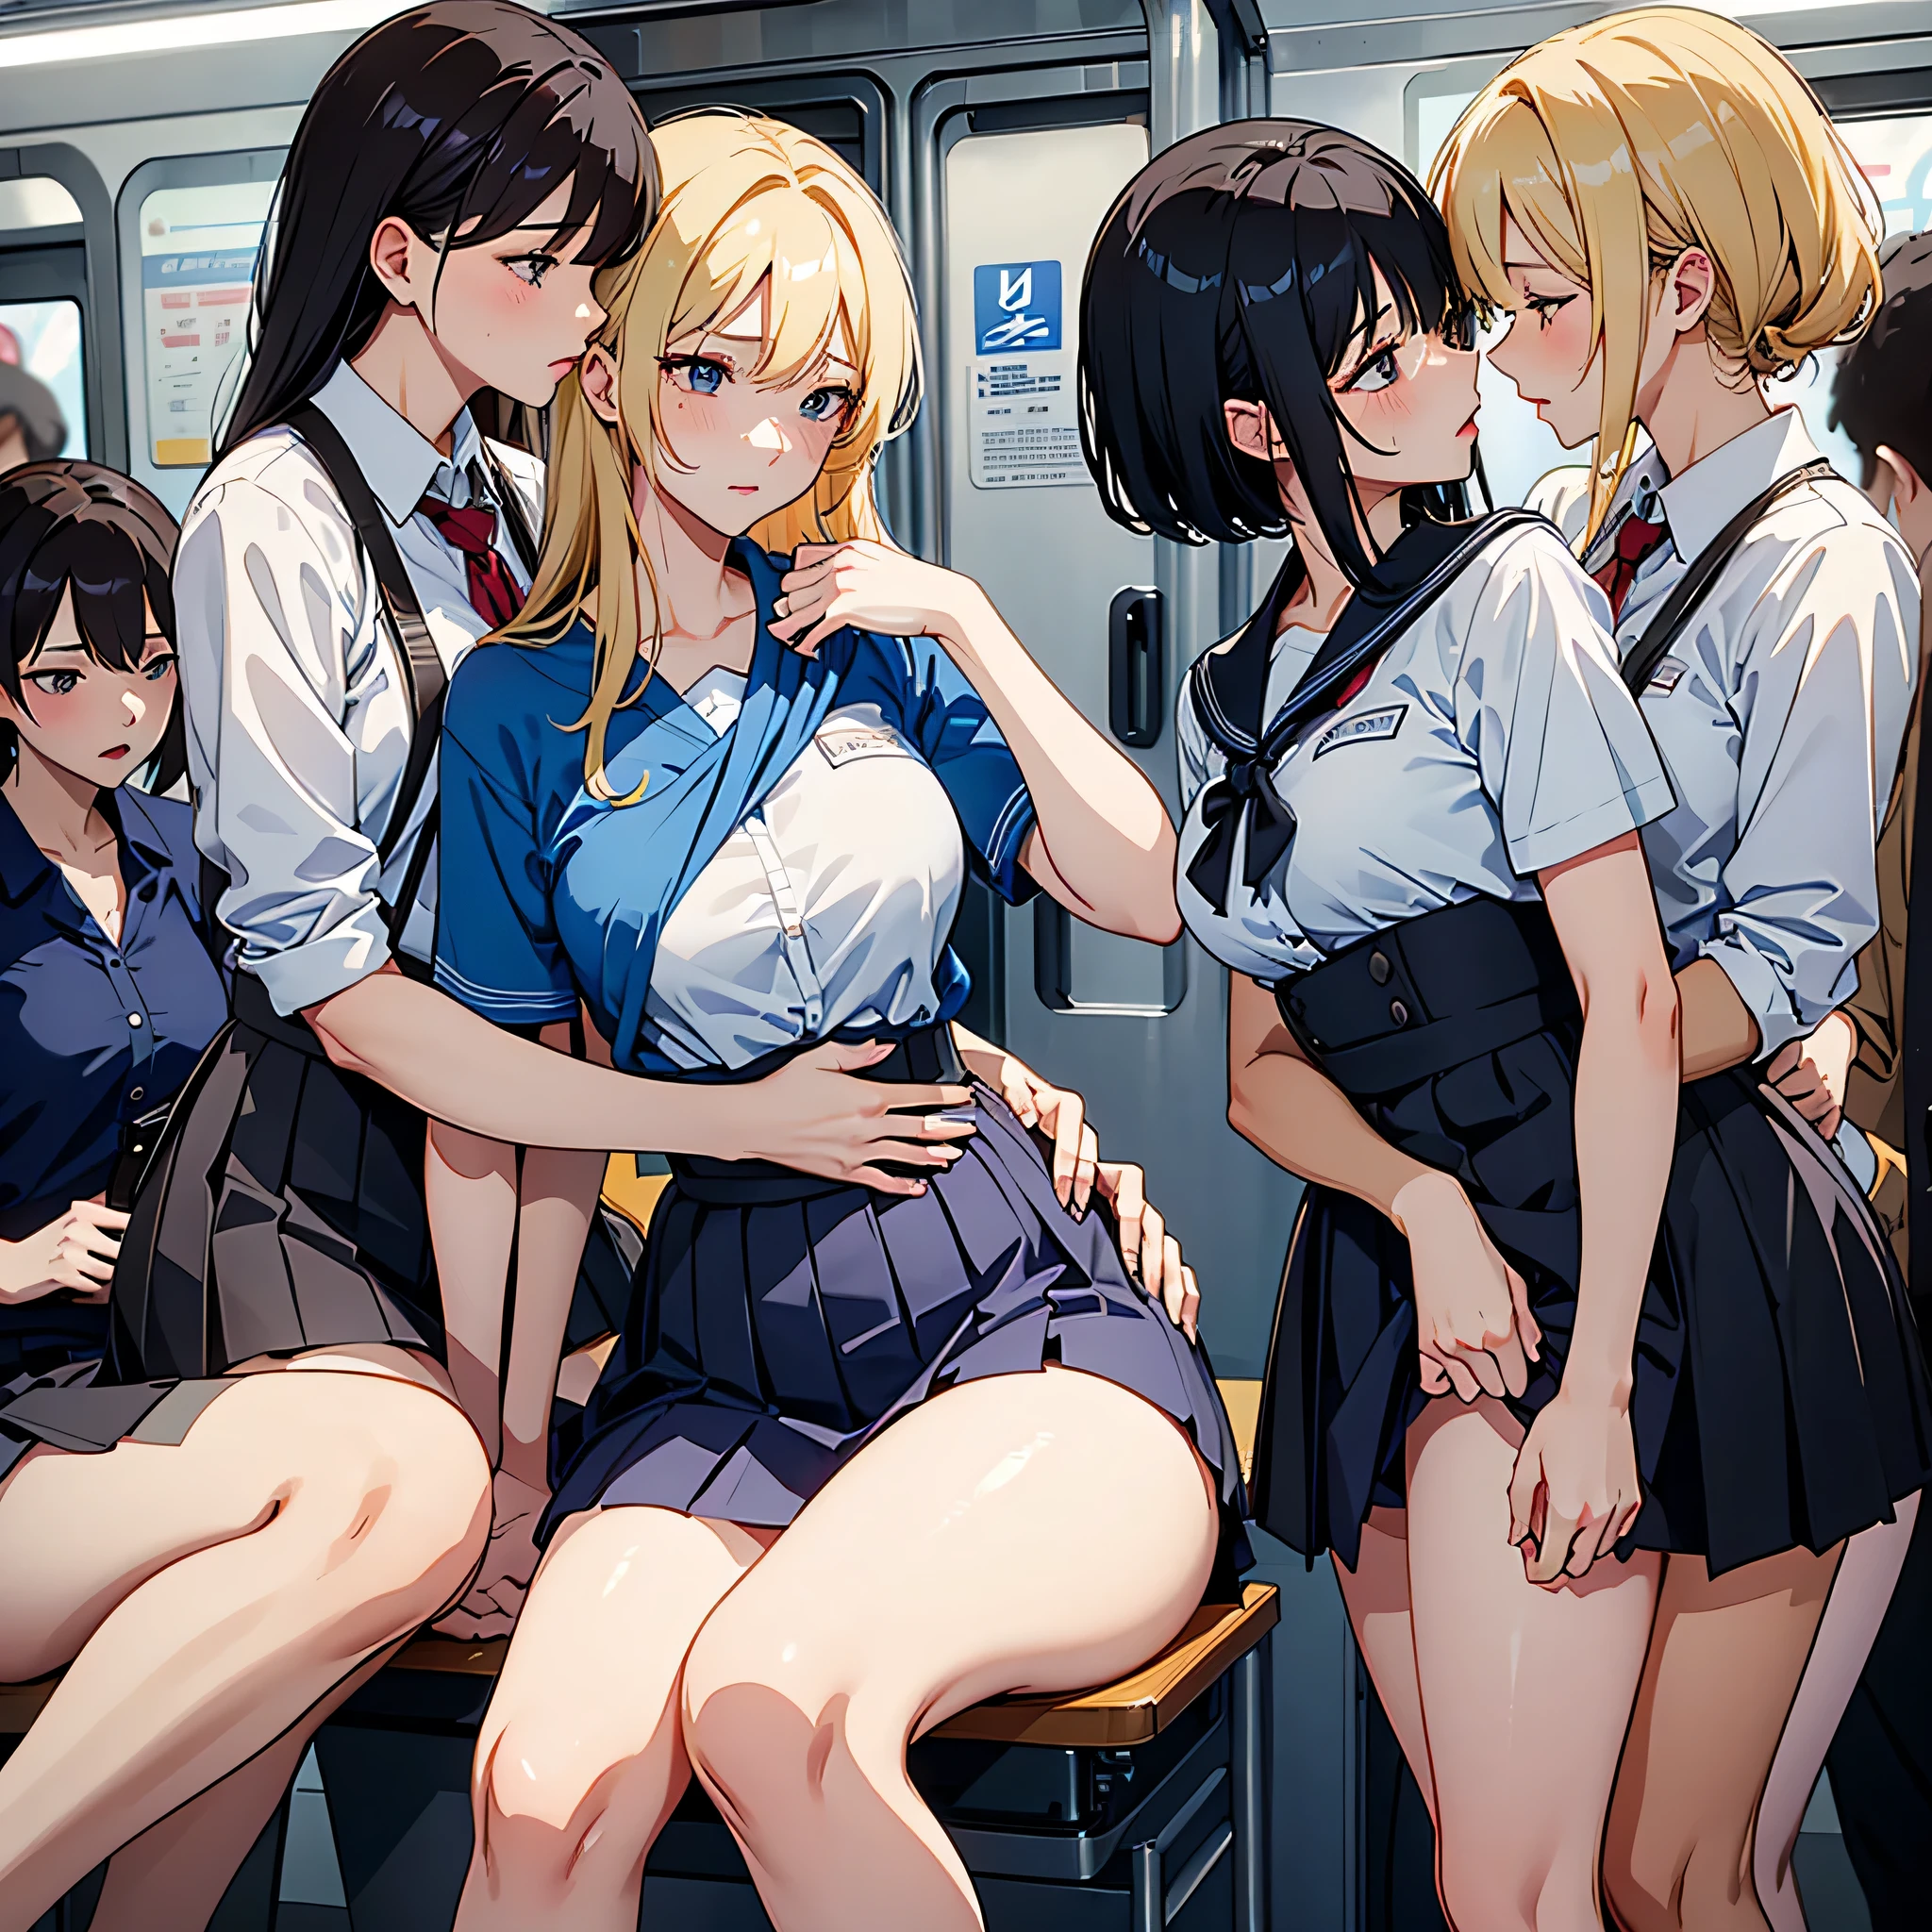 НФВ, фотореалистичный, высшее качество, шедевр, 4 кореянки , только корейские женщины, АБСОЛЮТНО НЕ МУЖЧИНА, абсолютно нет мужчин, ОЧЕНЬ многолюдный интерьер поезда метро только для женщин, подробный сценарий интерьера, VERY crowded только корейские женщины subway train interior detailed background, stиing insanely hot (Женщина 1) используя сексуальный ((школьная форма)), (((приподнятая юбка)), (толстые бедра), (выражение страха), Покрасневшее лицо, (Женщина 2) сексуальный молодой, белокурые волосы, растерянный взгляд, mature woman ass groping Женщина 1 from behind, Женщина 2 touches Женщина 1 vagina, young Женщина 2 caressing Женщина 1 legs, Мокрый поцелуй, Лесбийский поцелуй,  (((mature woman pressing her chest on Женщина 1 back))) и (((держа ее за талию позади себя)))